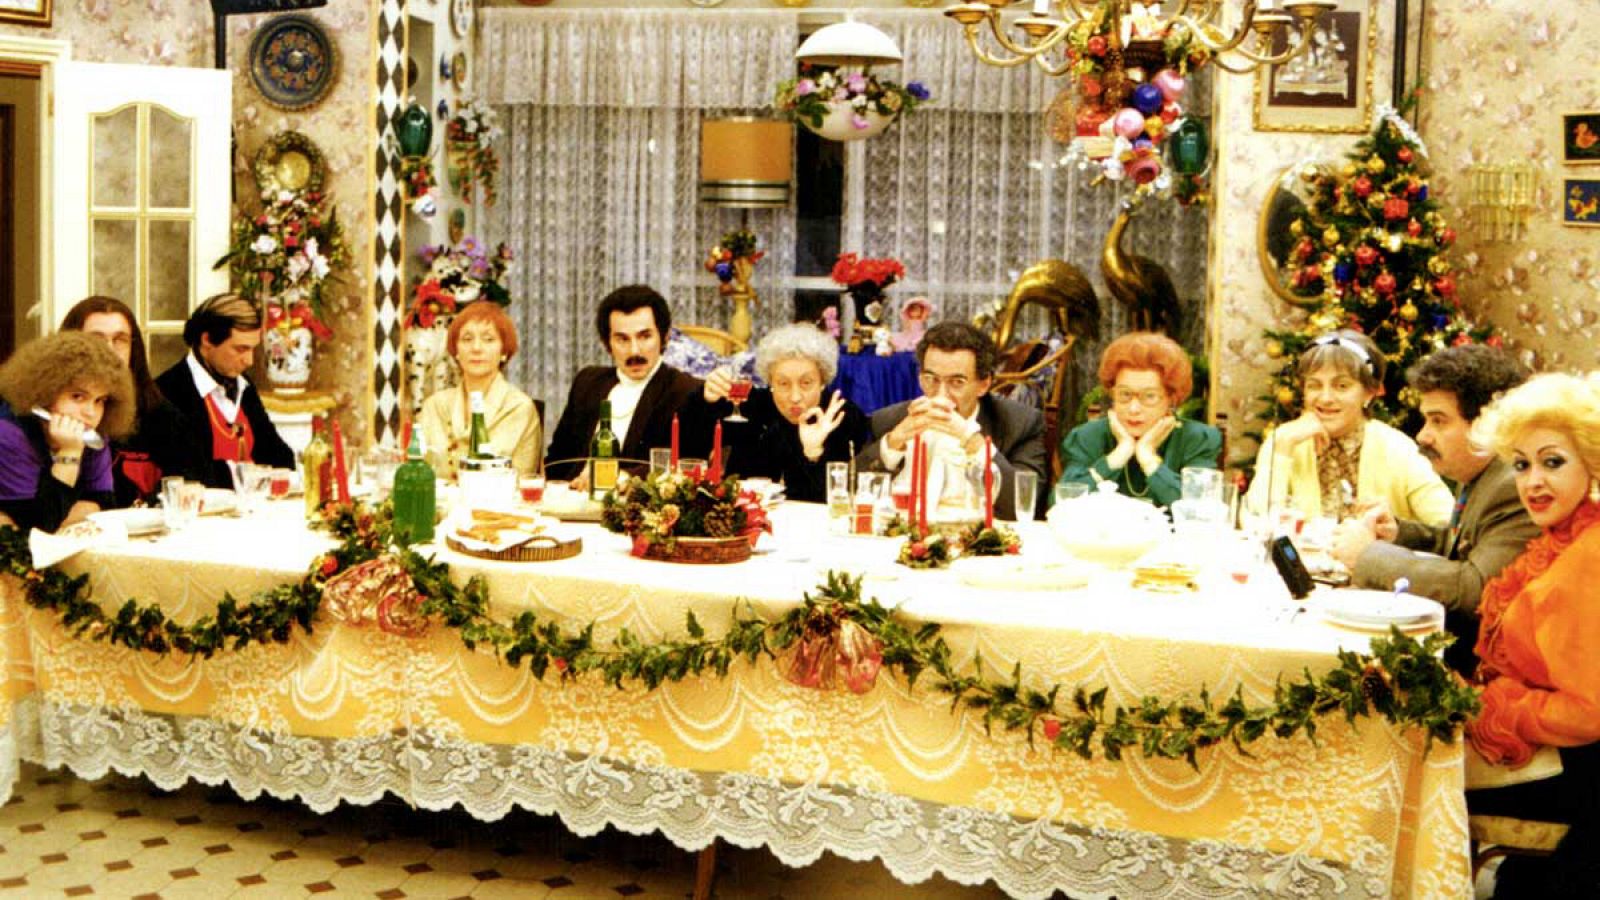 La telecena de la Cubana fue un especial de Nochebuena emitido por TVE en 1994